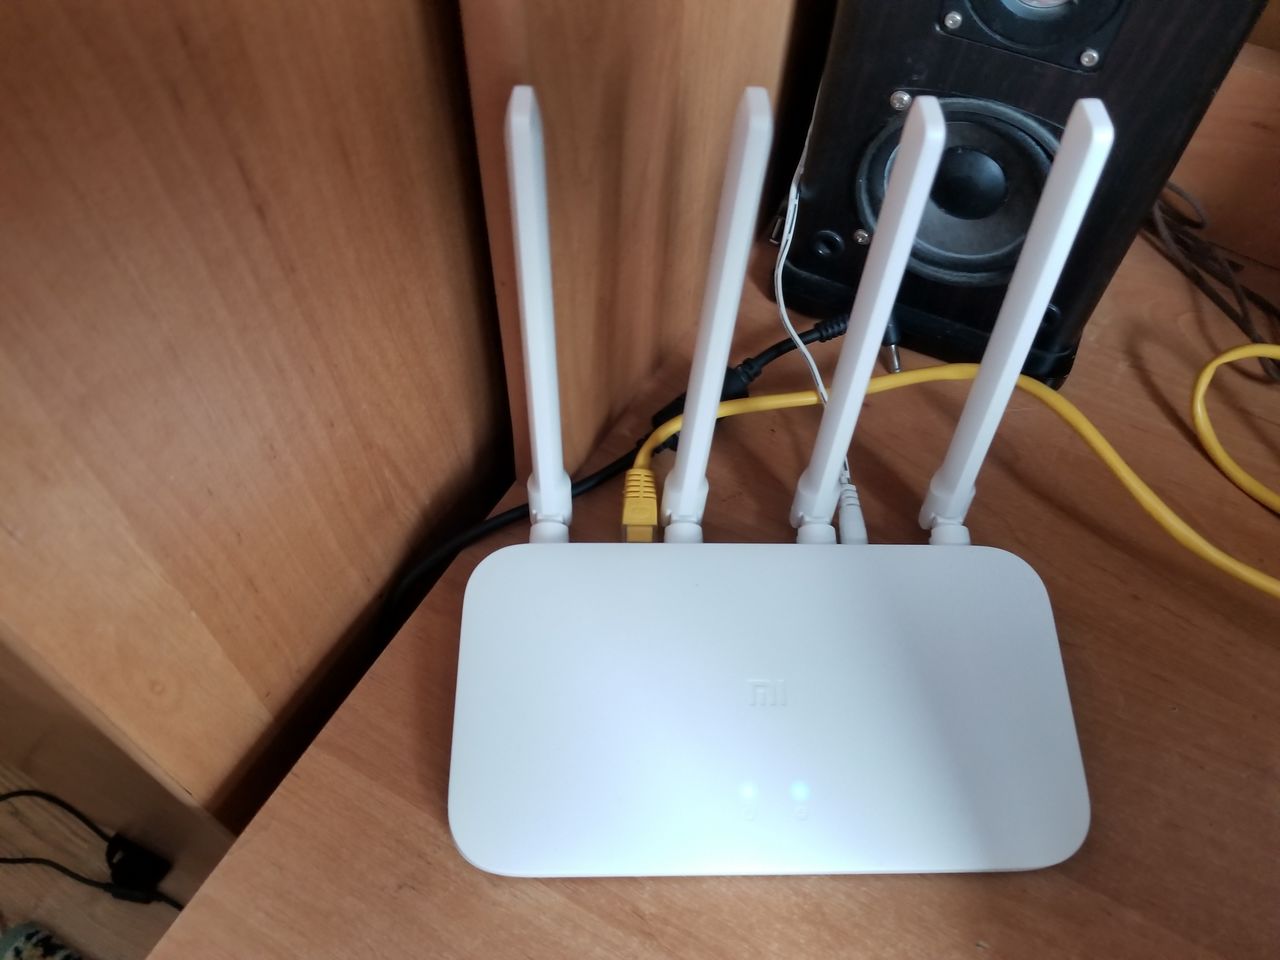 Mi wifi router 4c